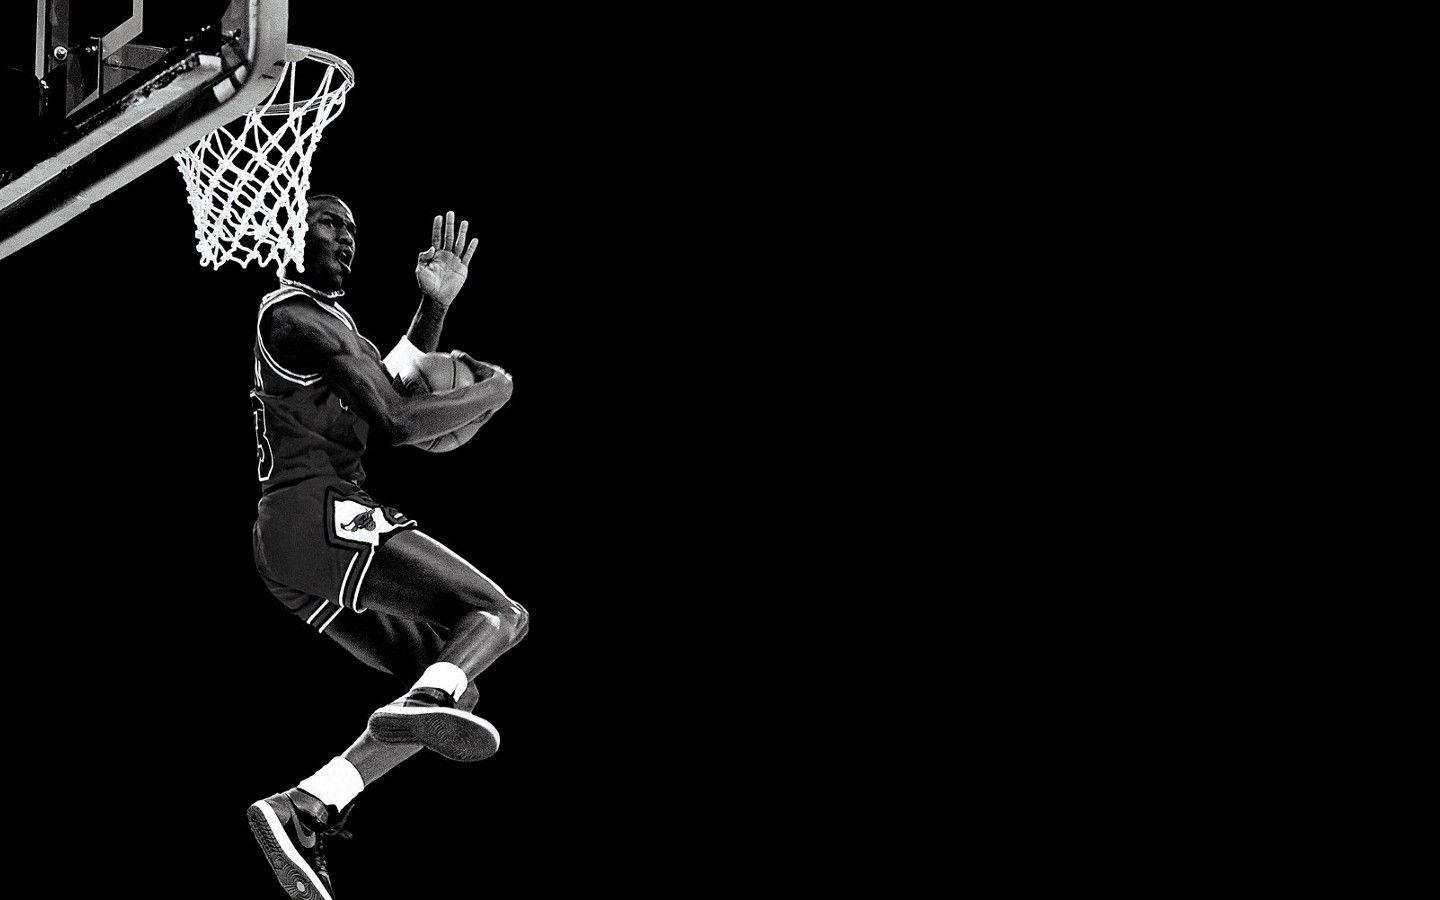 NBA, Michael Jordan, Basketball, Slam Dunk, Chicago Bulls, Nike, Air Jordan Wallpaper HD / Desktop and Mobile Background